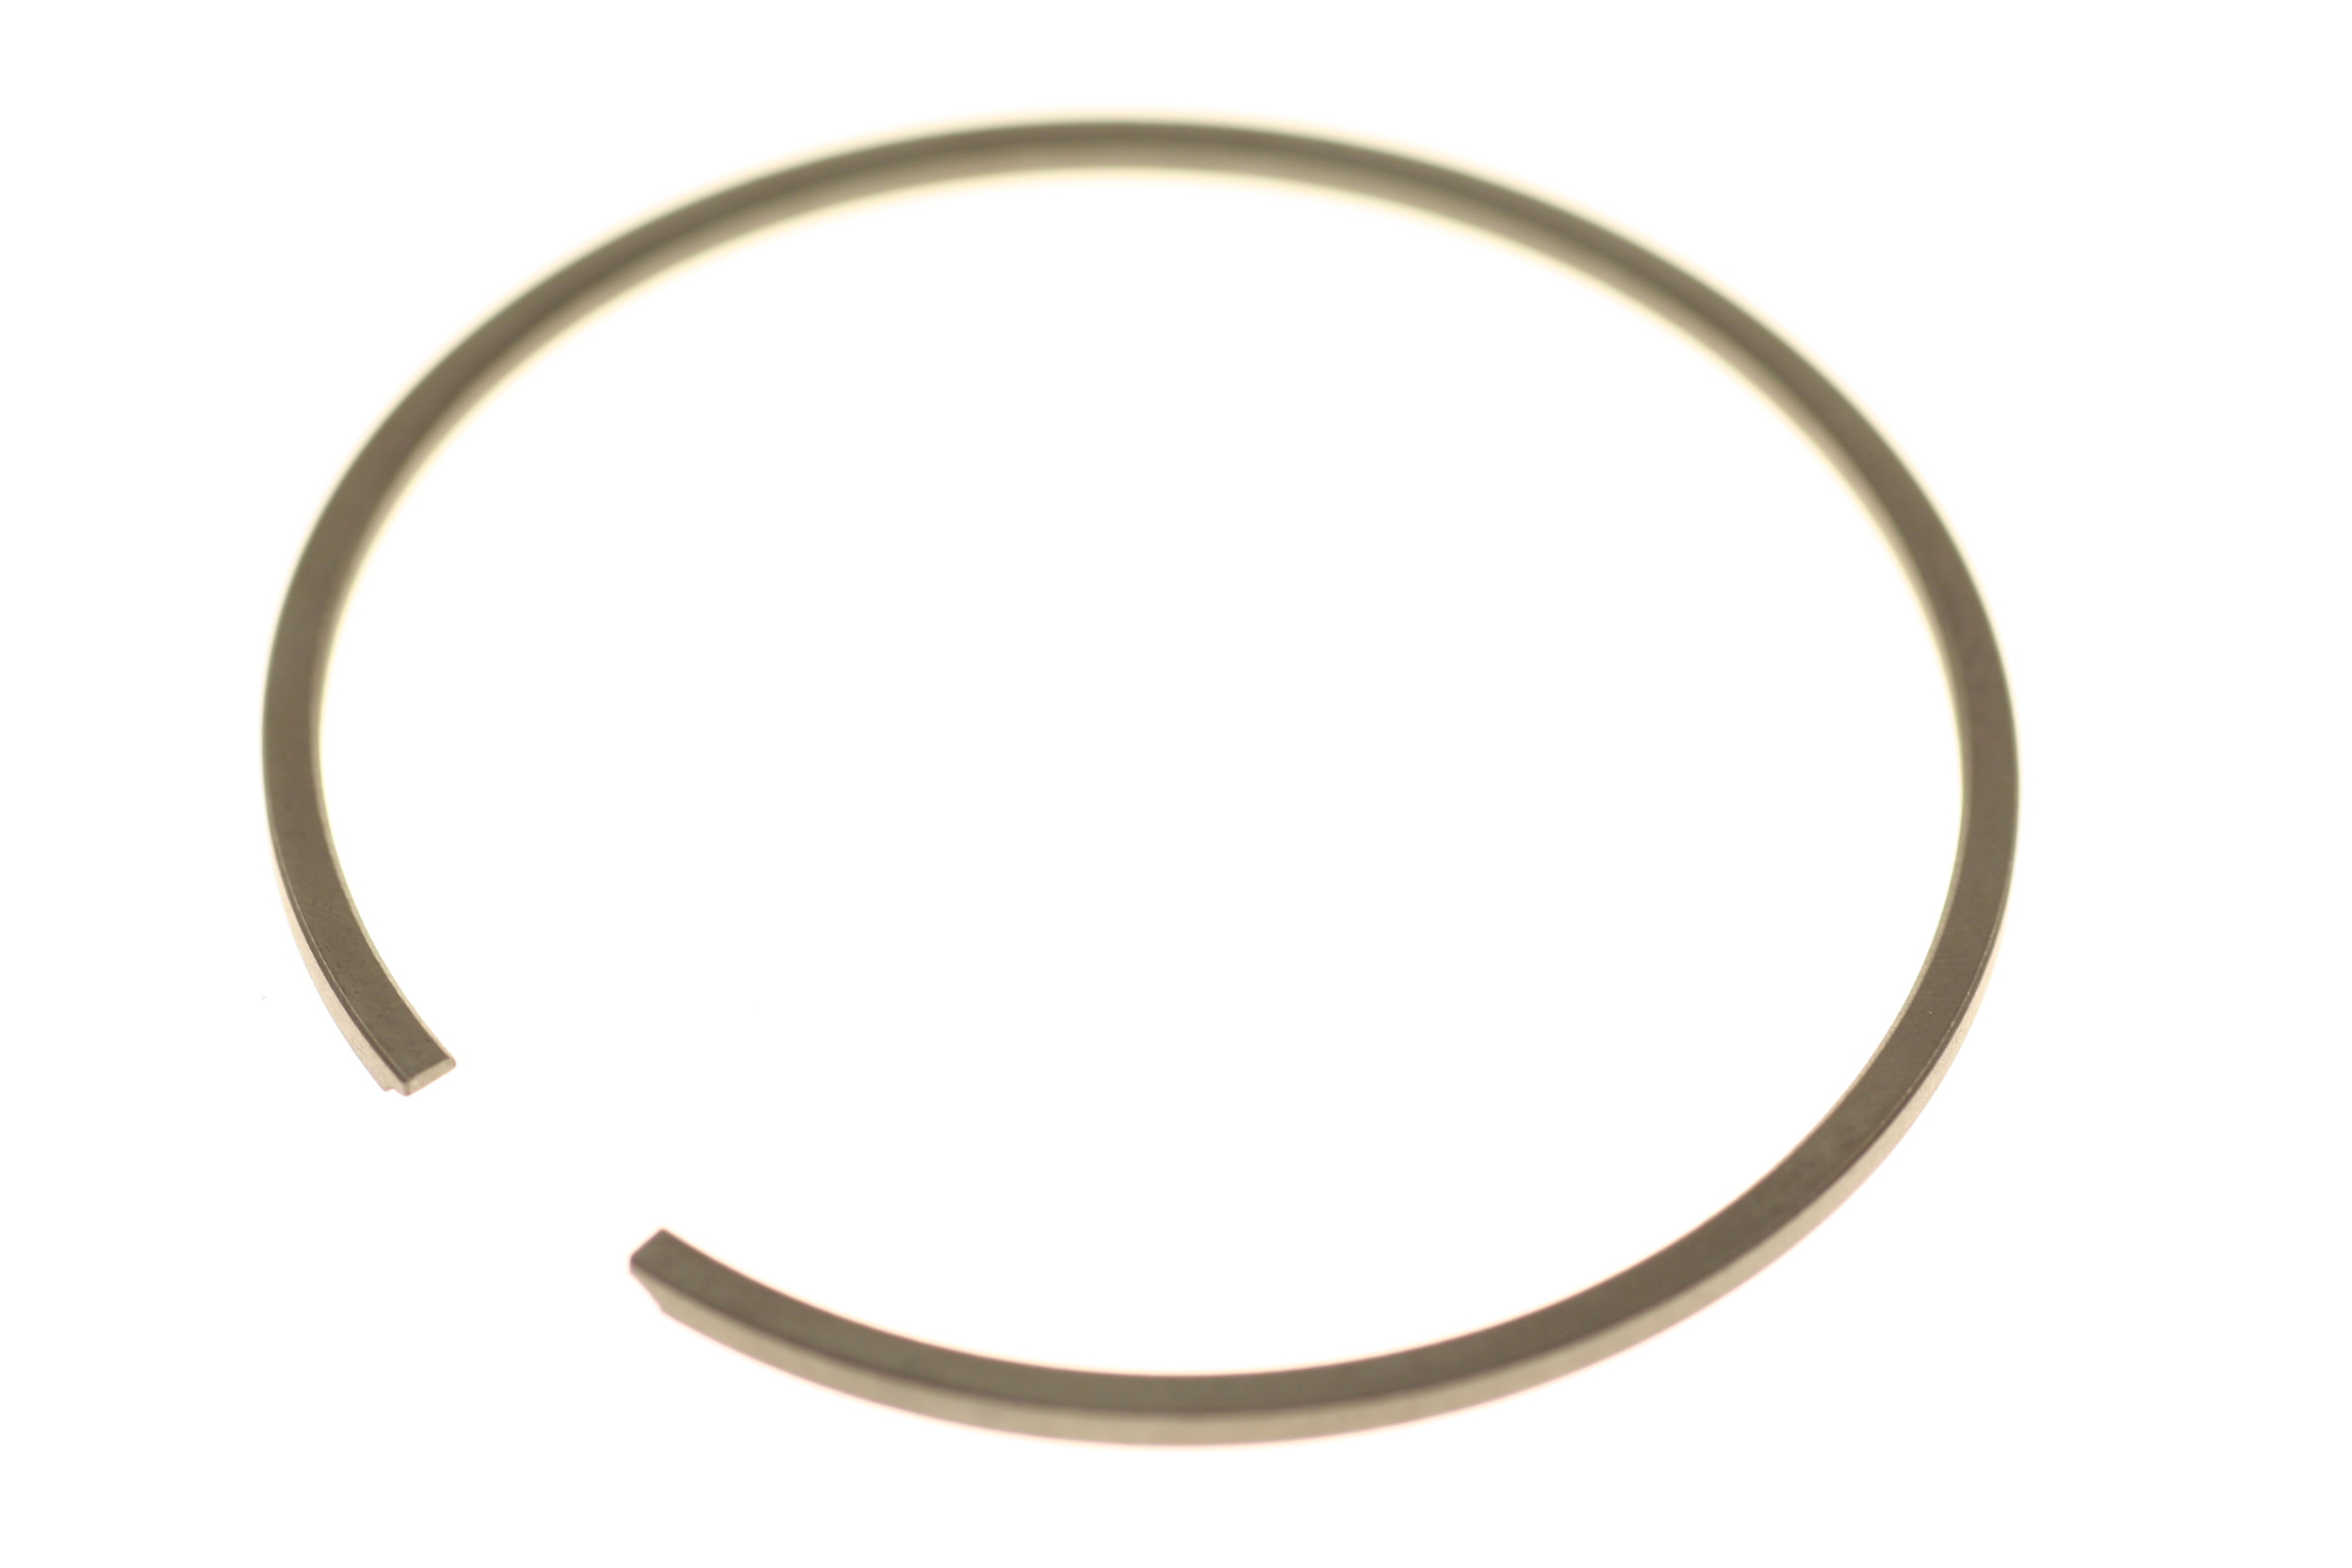 Kolbenring 50cm³, PK50XL Kat, Ø38mm, Originalmaß, nur 1 Ring